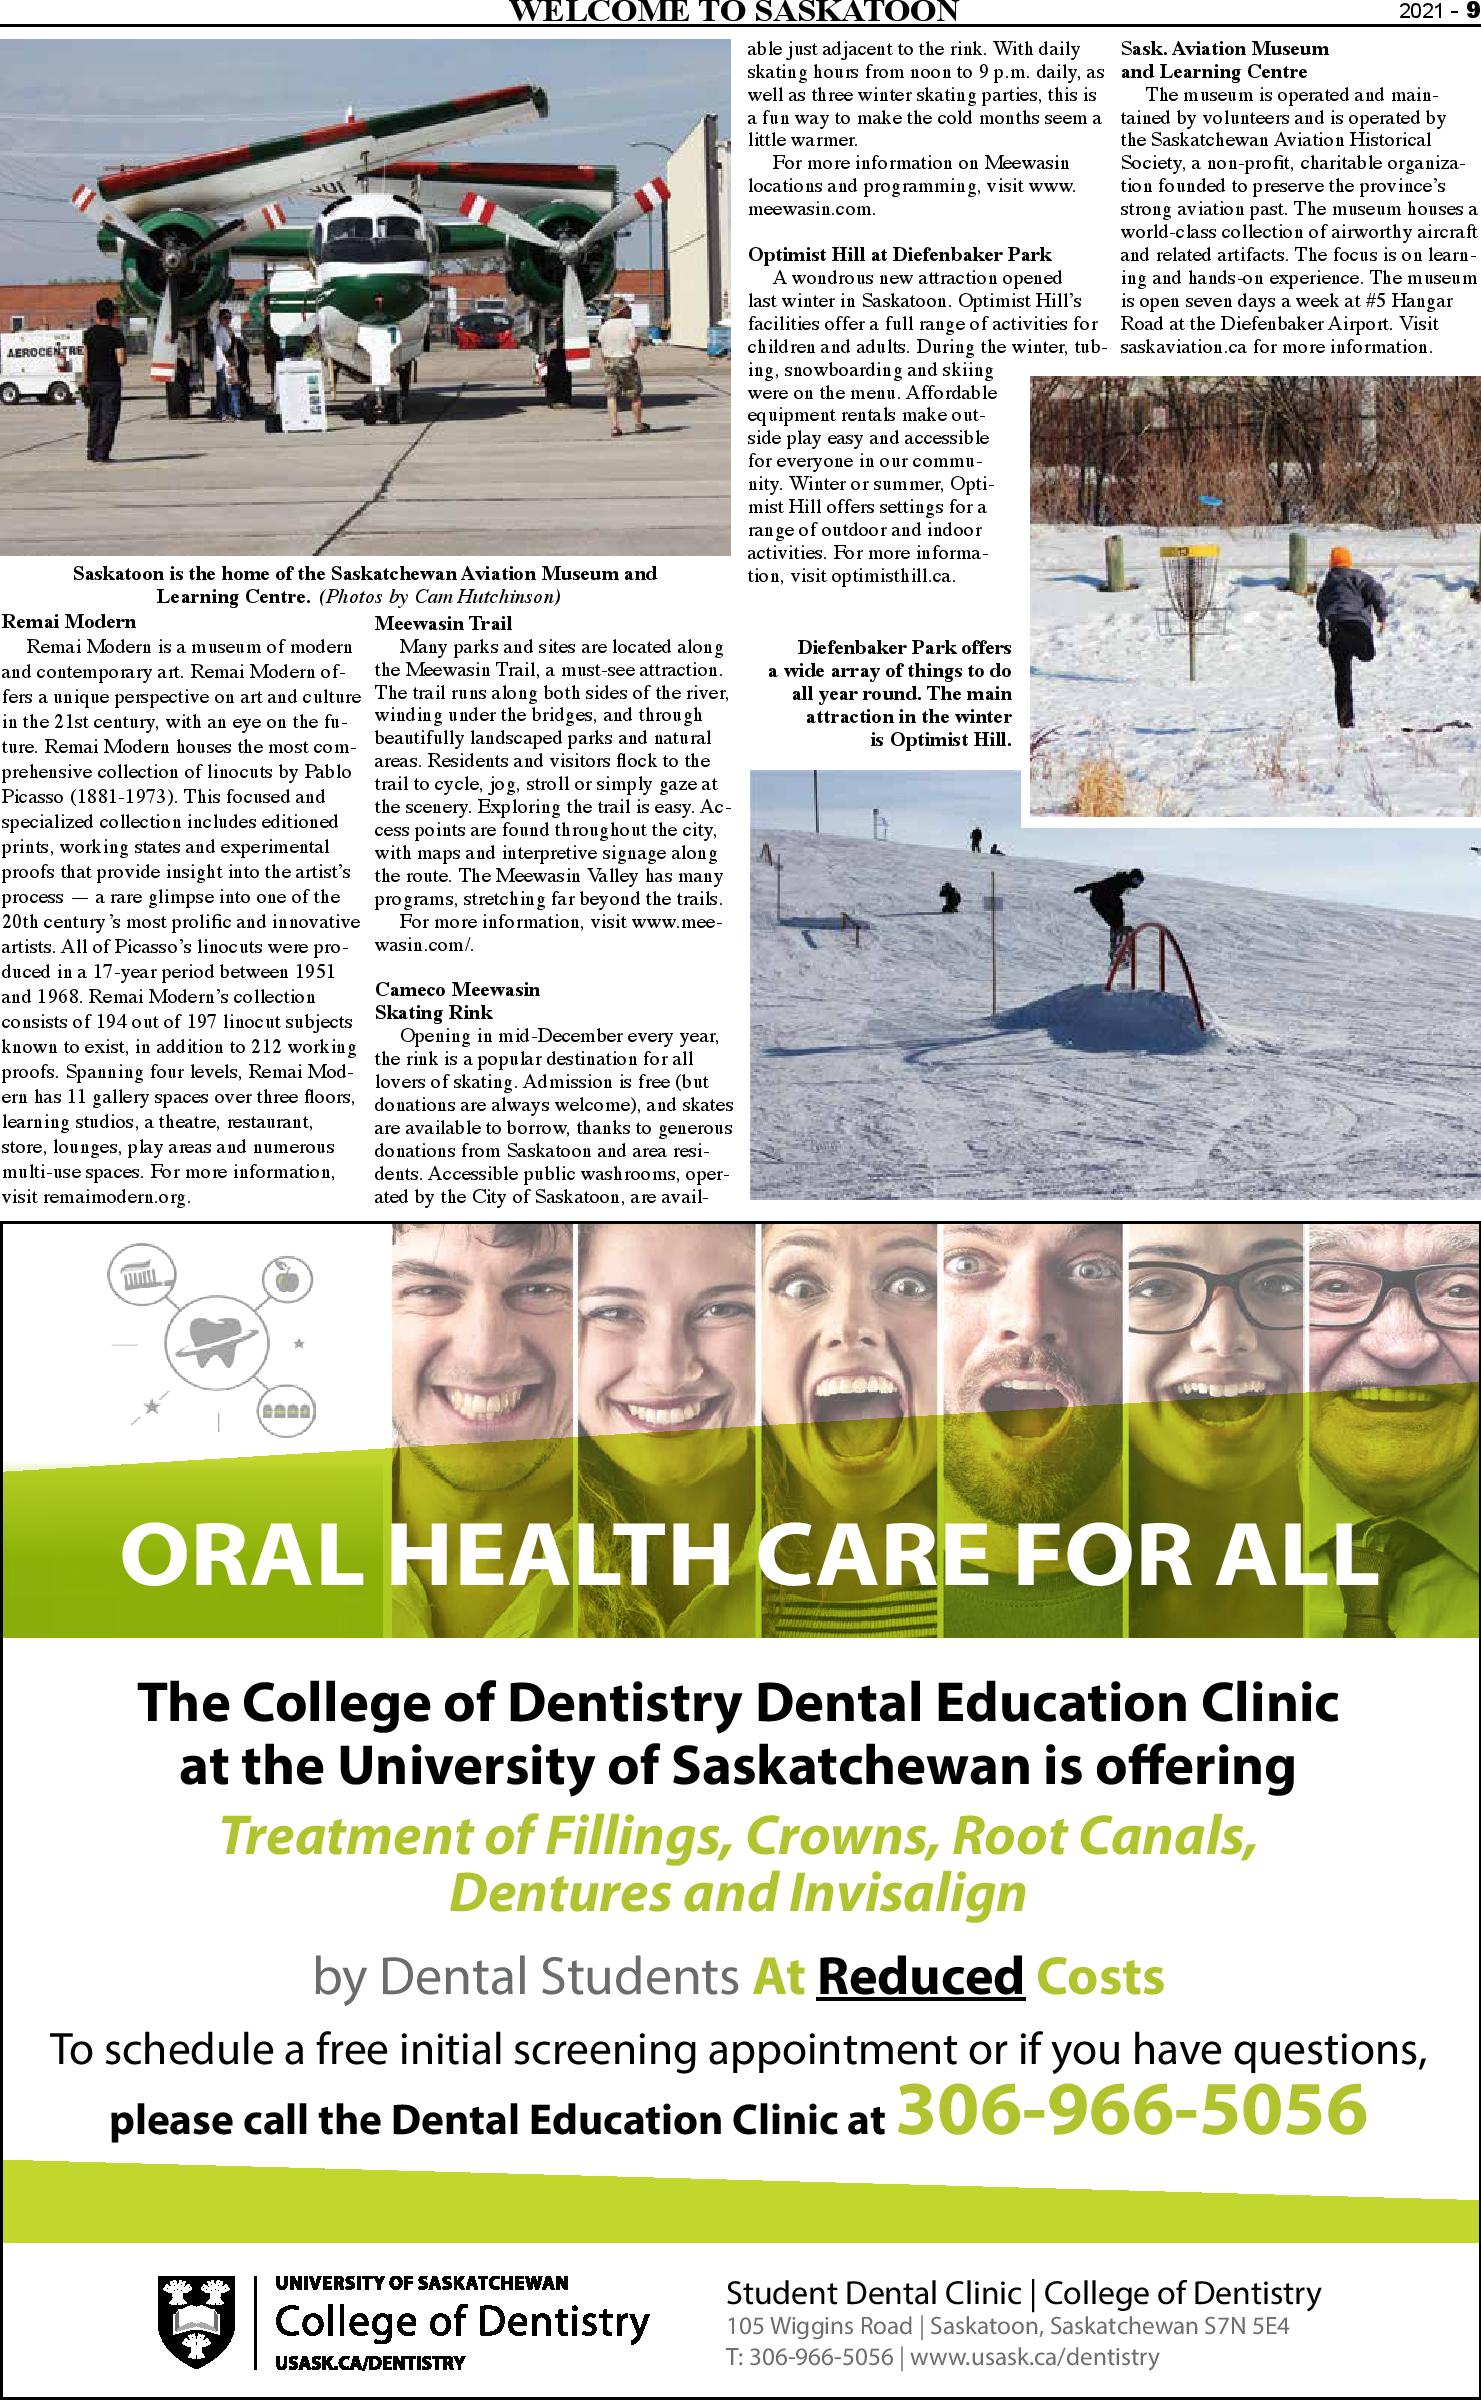 Welcome to Saskatoon_2021-page-009